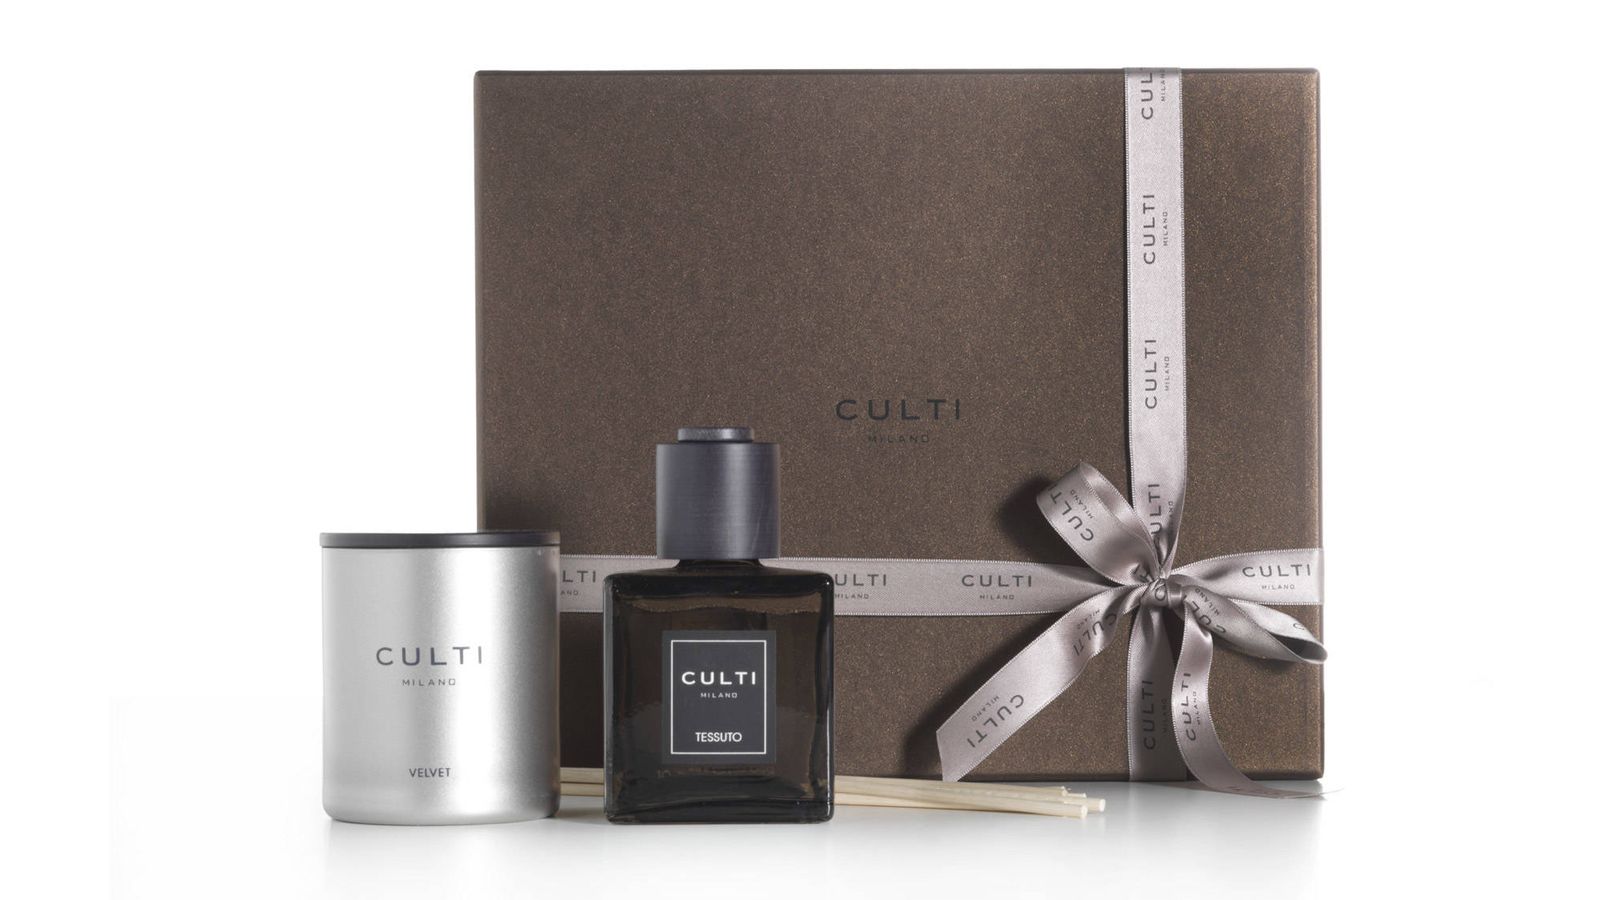 Gift, la última colección de bienestar de Culti Milano